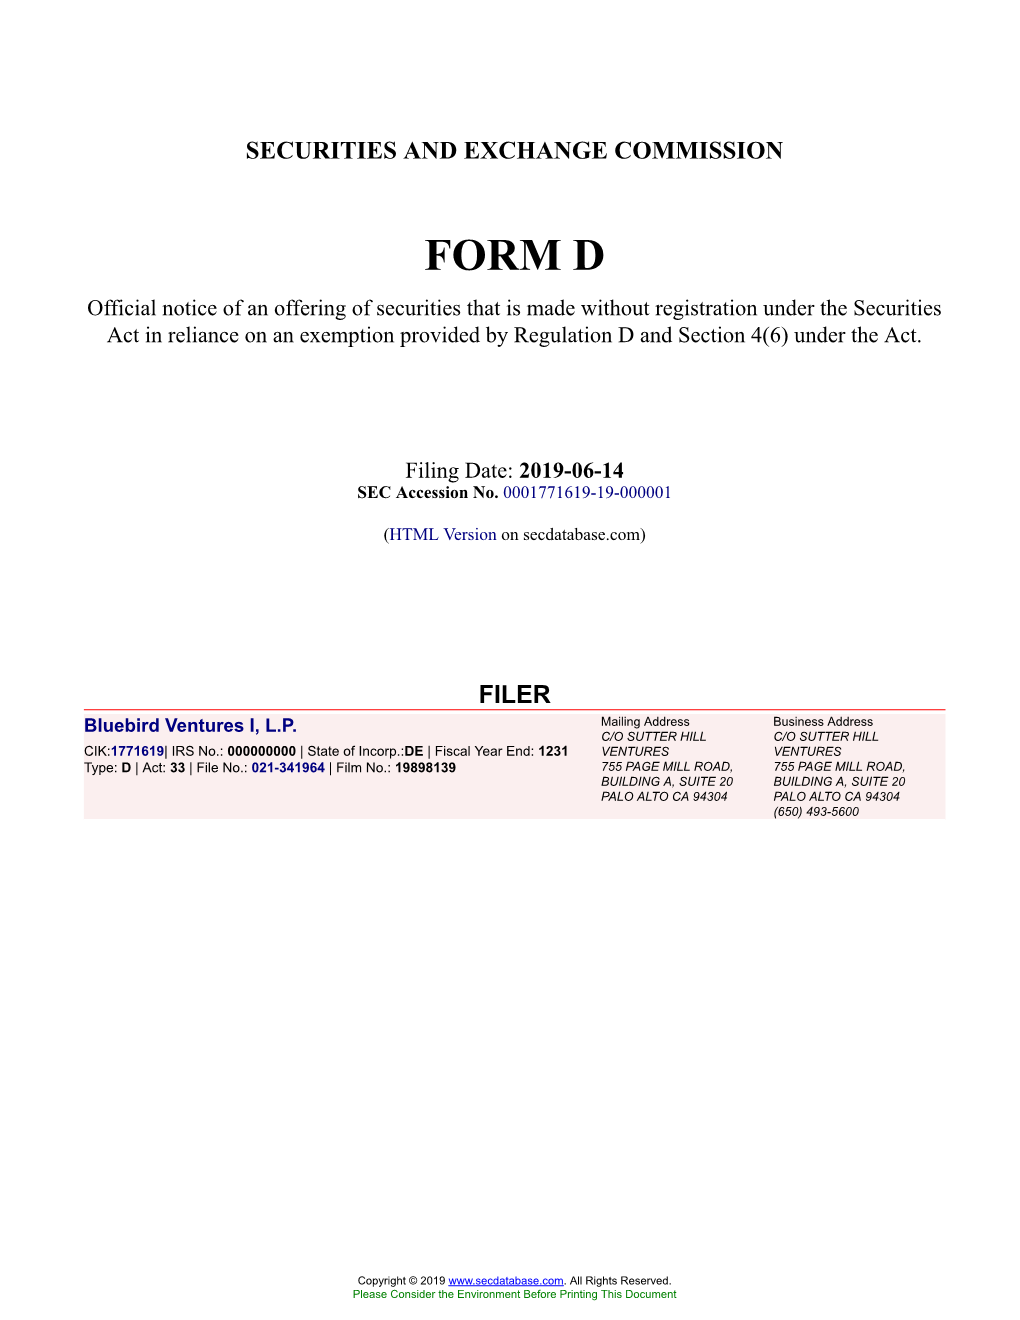 Bluebird Ventures I, L.P. Form D Filed 2019-06-14